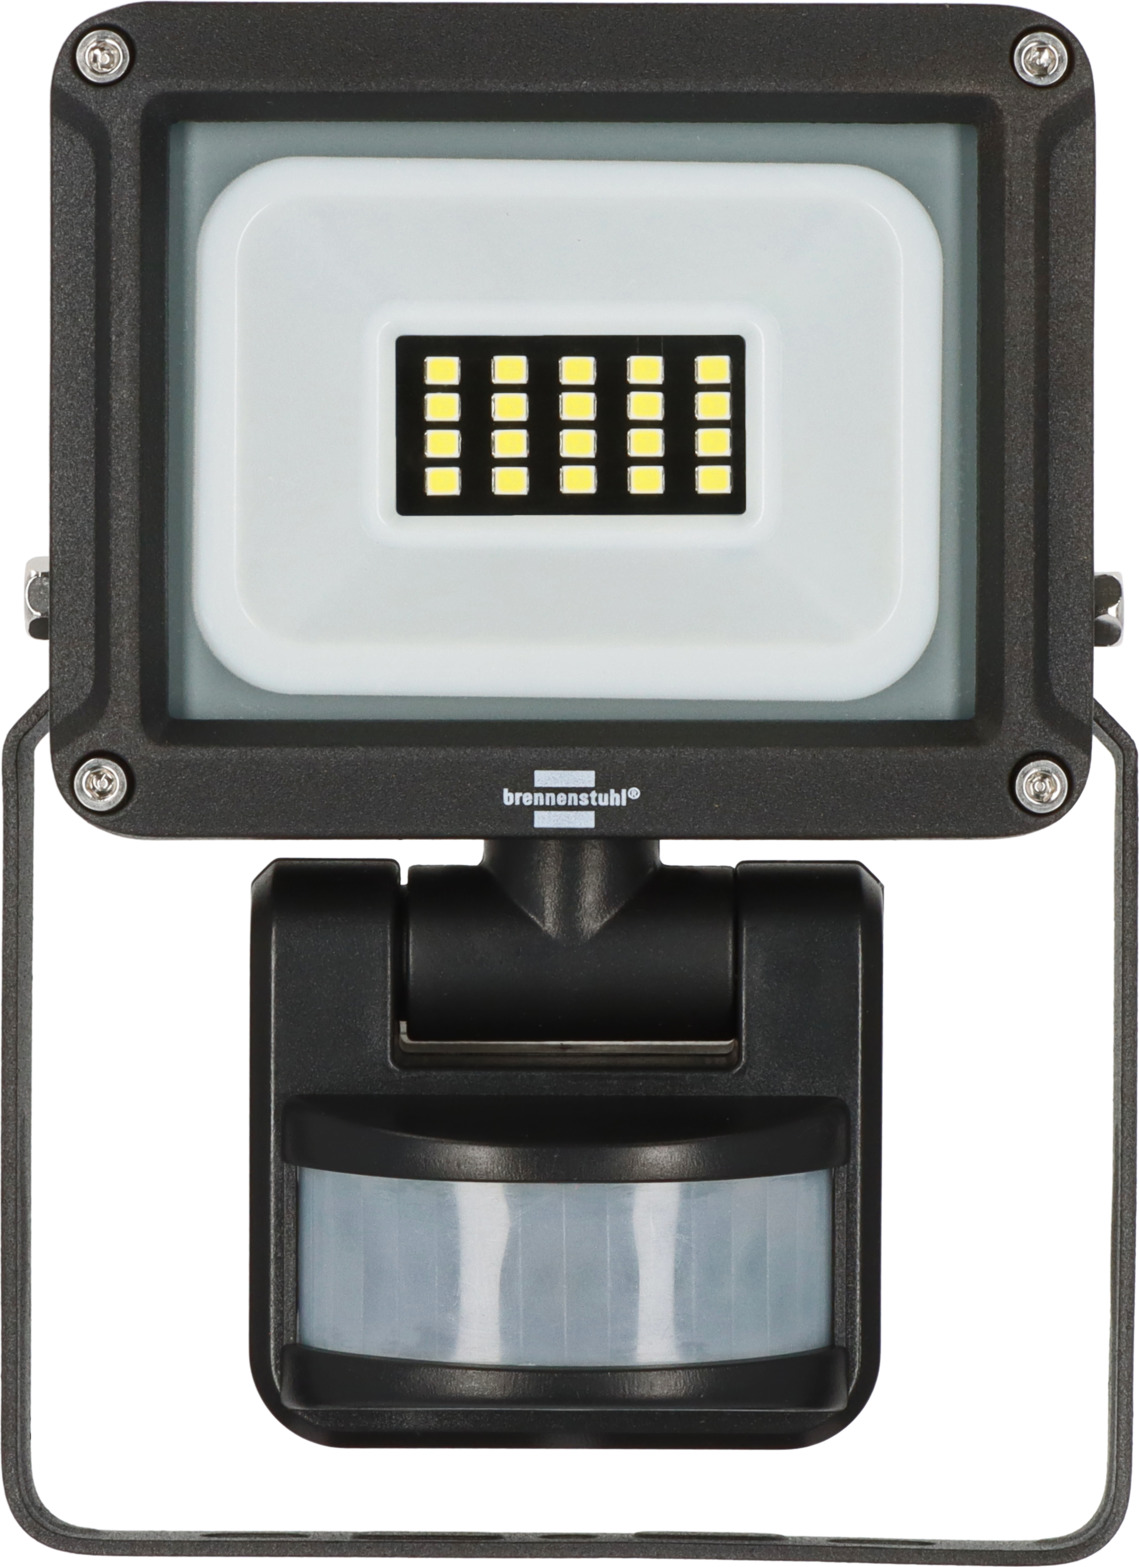 Projecteur LED extérieur JARO 1060 P avec détecteur de mouvements  infrarouge 1150lm, 10W, IP65